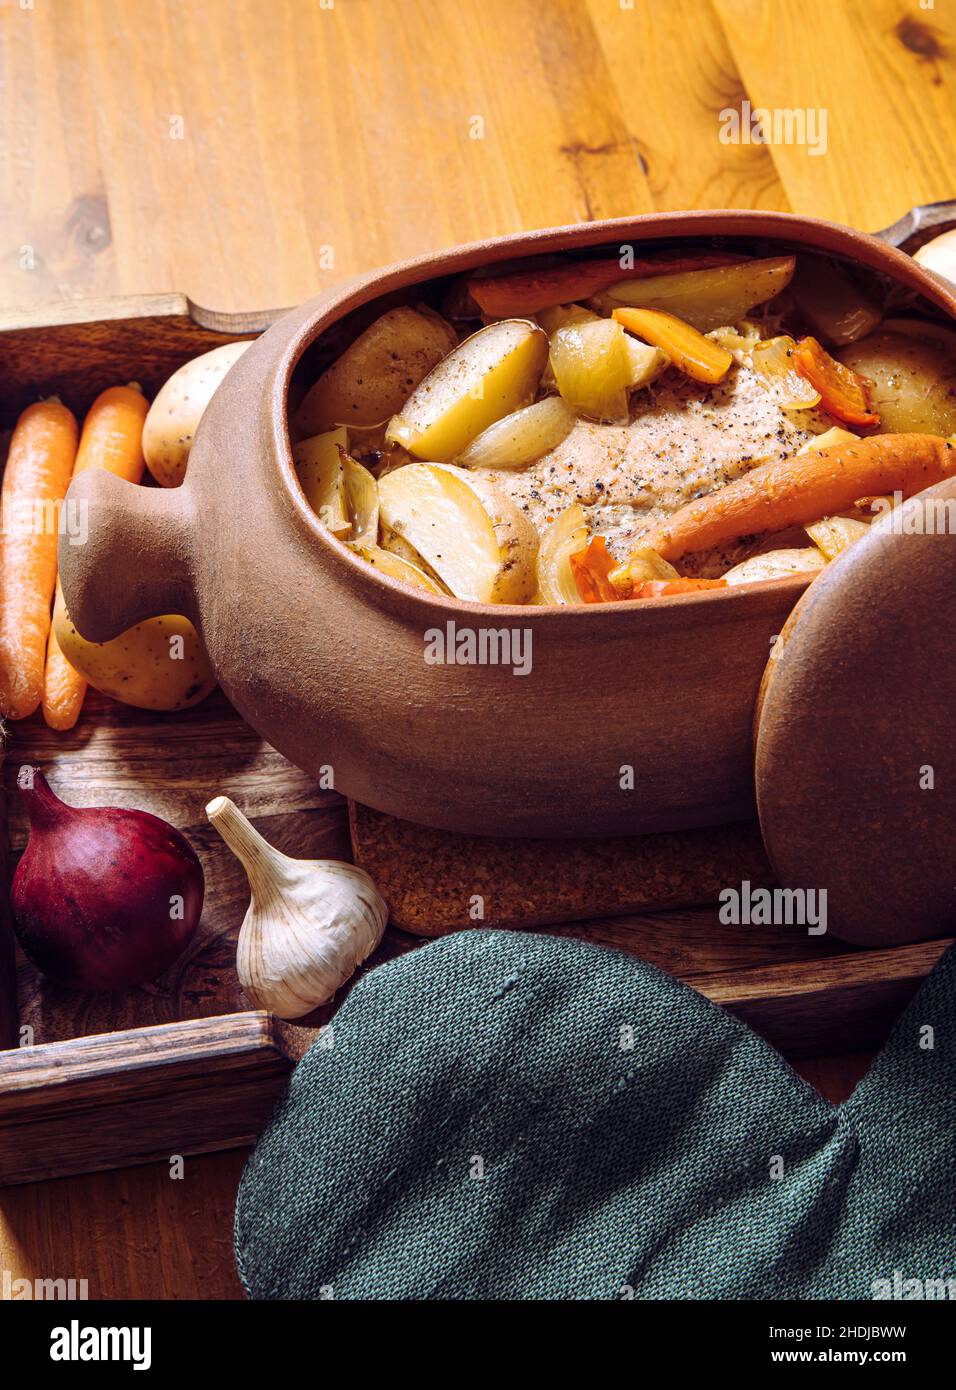 Vue latérale de la marmite en terre cuite avec rôti de porc lentement cuit et légumes à l'intérieur sur un plateau en bois et une table en bois, entouré de matières premières biologiques. Banque D'Images